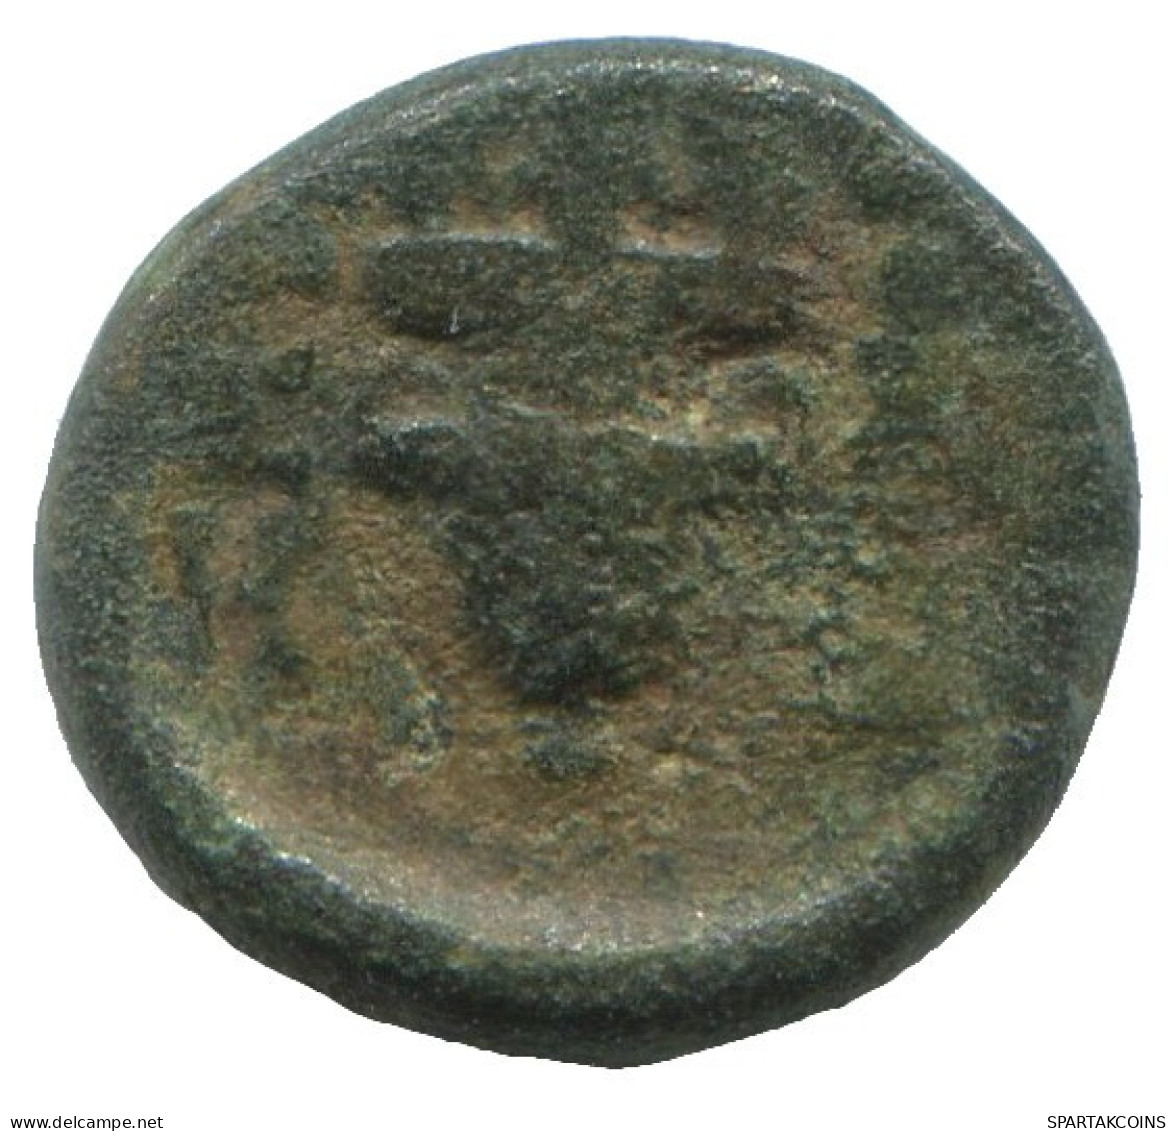 AMPHORA Antike Authentische Original GRIECHISCHE Münze 1.6g/11mm #SAV1229.11.D.A - Griechische Münzen